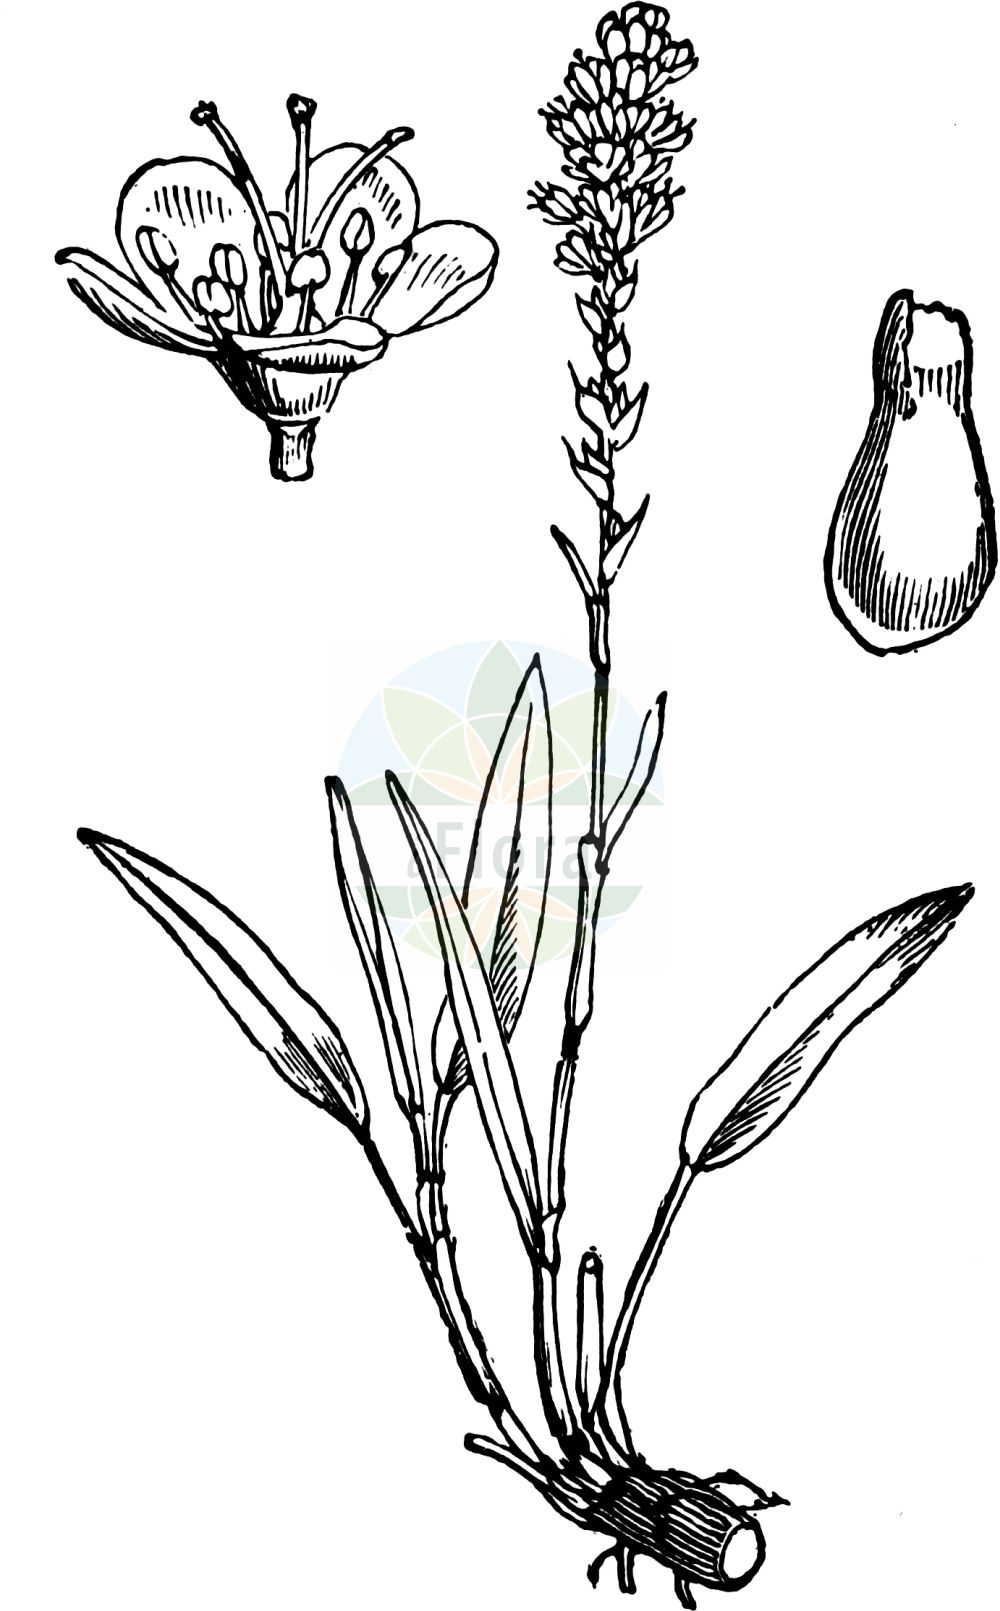 Historische Abbildung von Bistorta vivipara (Knöllchen-Knöterich - Alpine Bistort). Das Bild zeigt Blatt, Bluete, Frucht und Same. ---- Historical Drawing of Bistorta vivipara (Knöllchen-Knöterich - Alpine Bistort). The image is showing leaf, flower, fruit and seed.(Bistorta vivipara,Knöllchen-Knöterich,Alpine Bistort,Bistorta vivipara,Persicaria vivipara,Polygonum viviparum,Knoellchen-Knoeterich,Alpine Bistort,Serpent Grass,Viviparous Bistort,Bistorta,Wiesen-Knöterich,Bistort,Polygonaceae,Knöterichgewächse,Knotgrass family,Blatt,Bluete,Frucht,Same,leaf,flower,fruit,seed,Fitch et al. (1880))